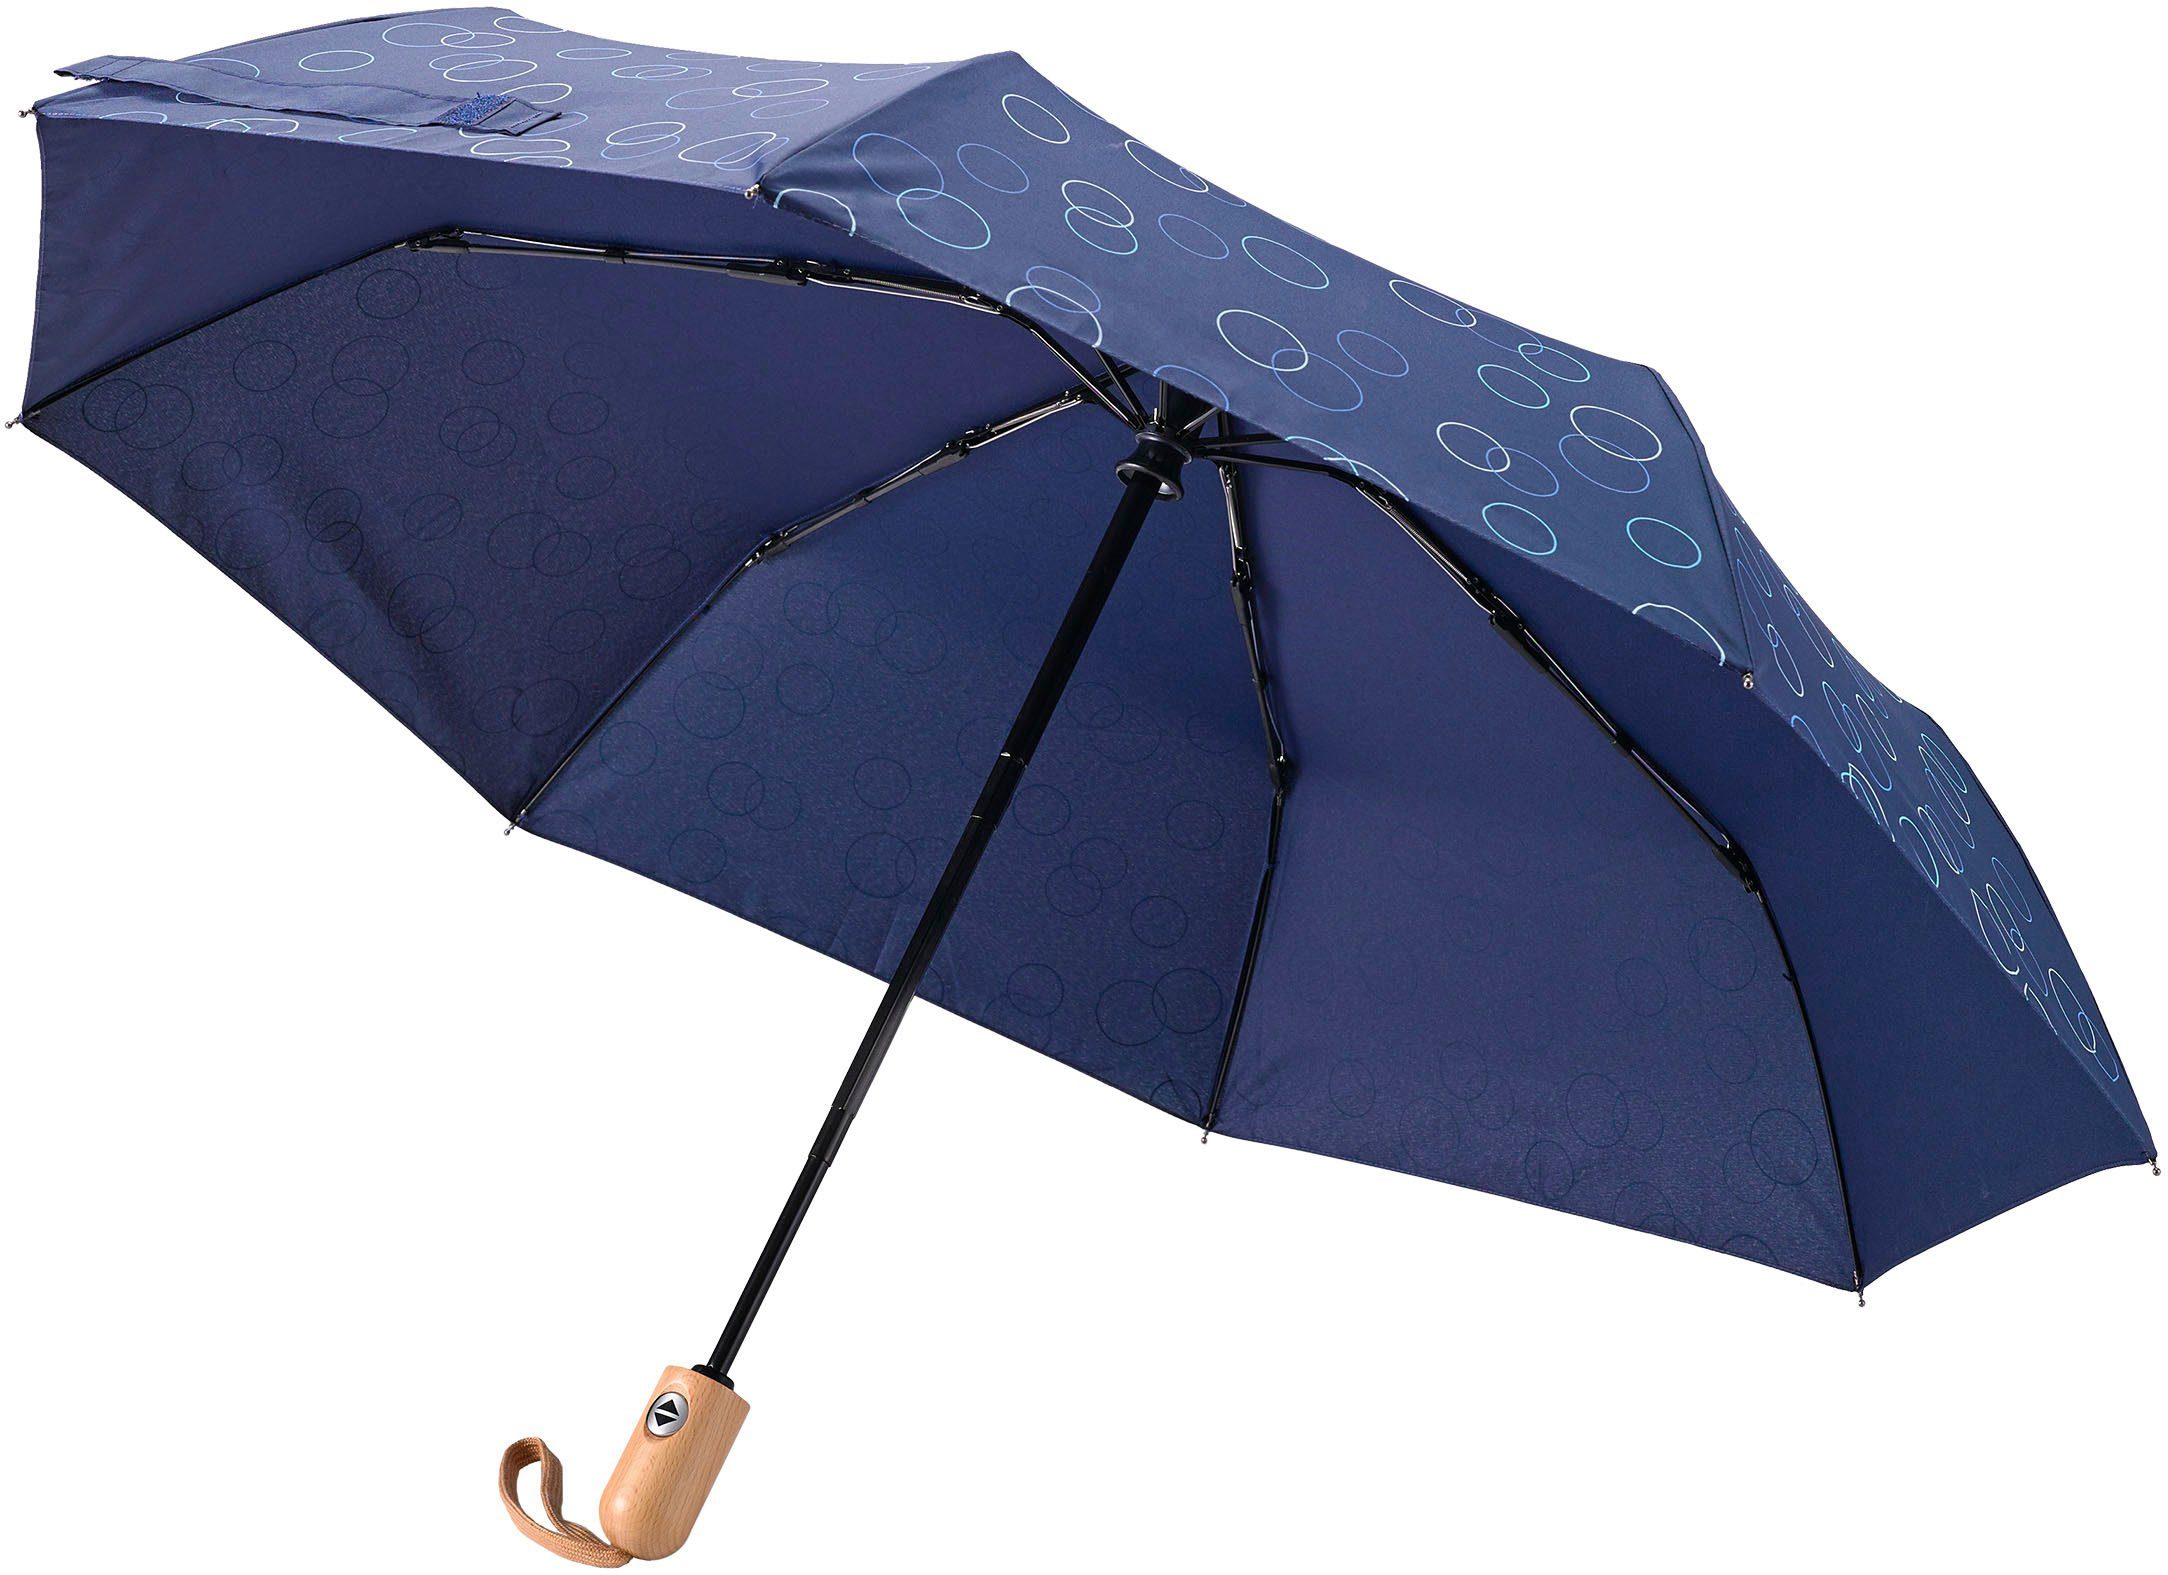 Umwelt-Taschenschirm, blau Kreise marine, Taschenregenschirm EuroSCHIRM®